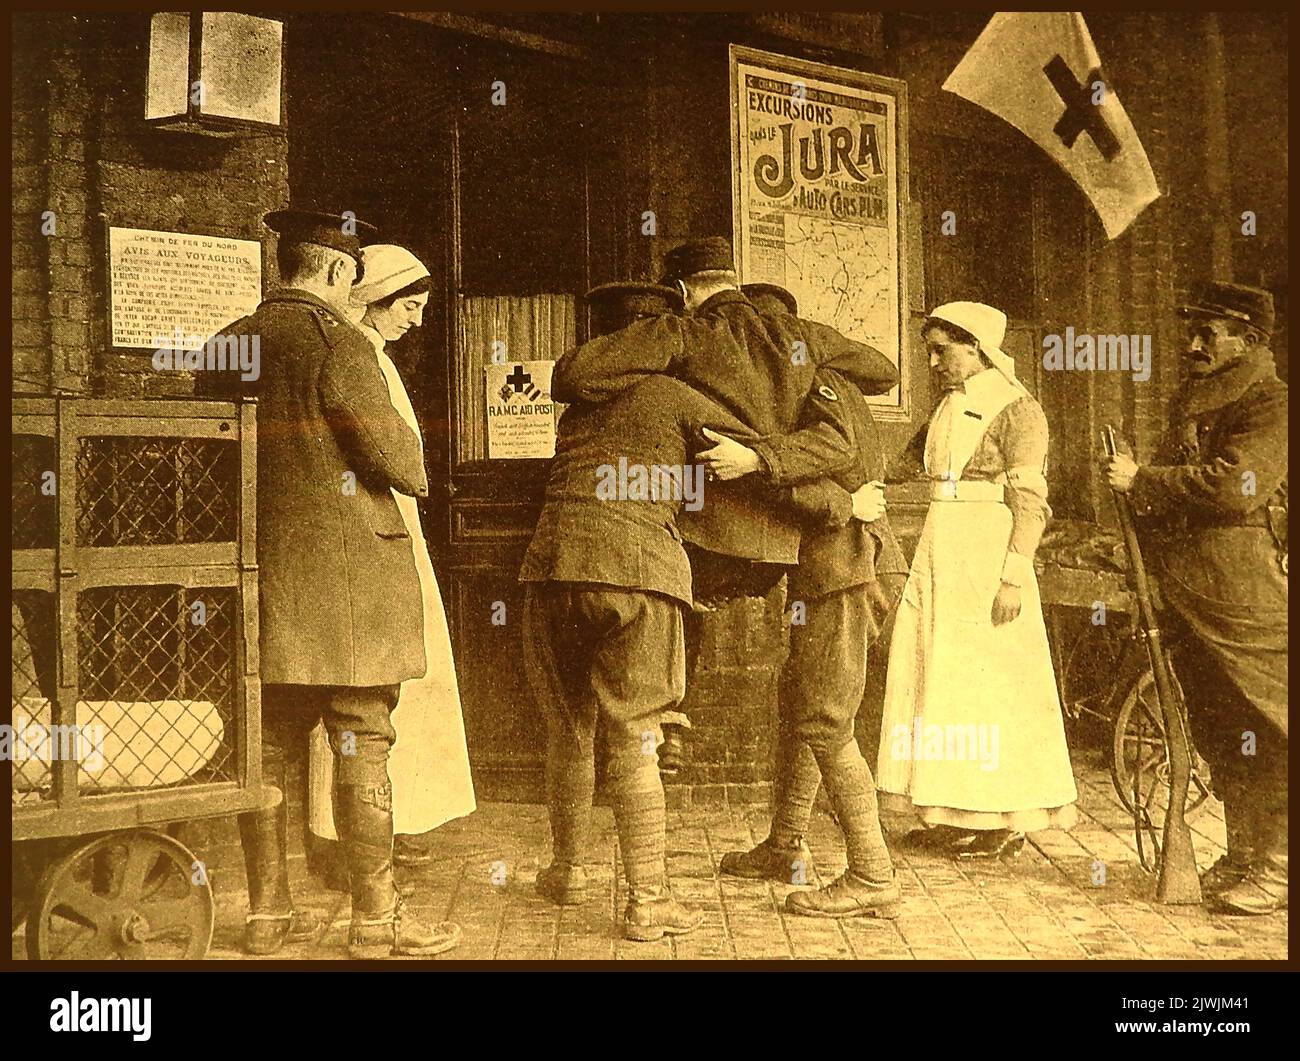 WWI - R.A.M.C. (Royal Army Medical corps) le personnel transporte le premier soldat blessé dans le premier poste d'aide de la Croix-Rouge en France, dans des locaux autrefois utilisés par AVIS Motors pour des excursions Banque D'Images